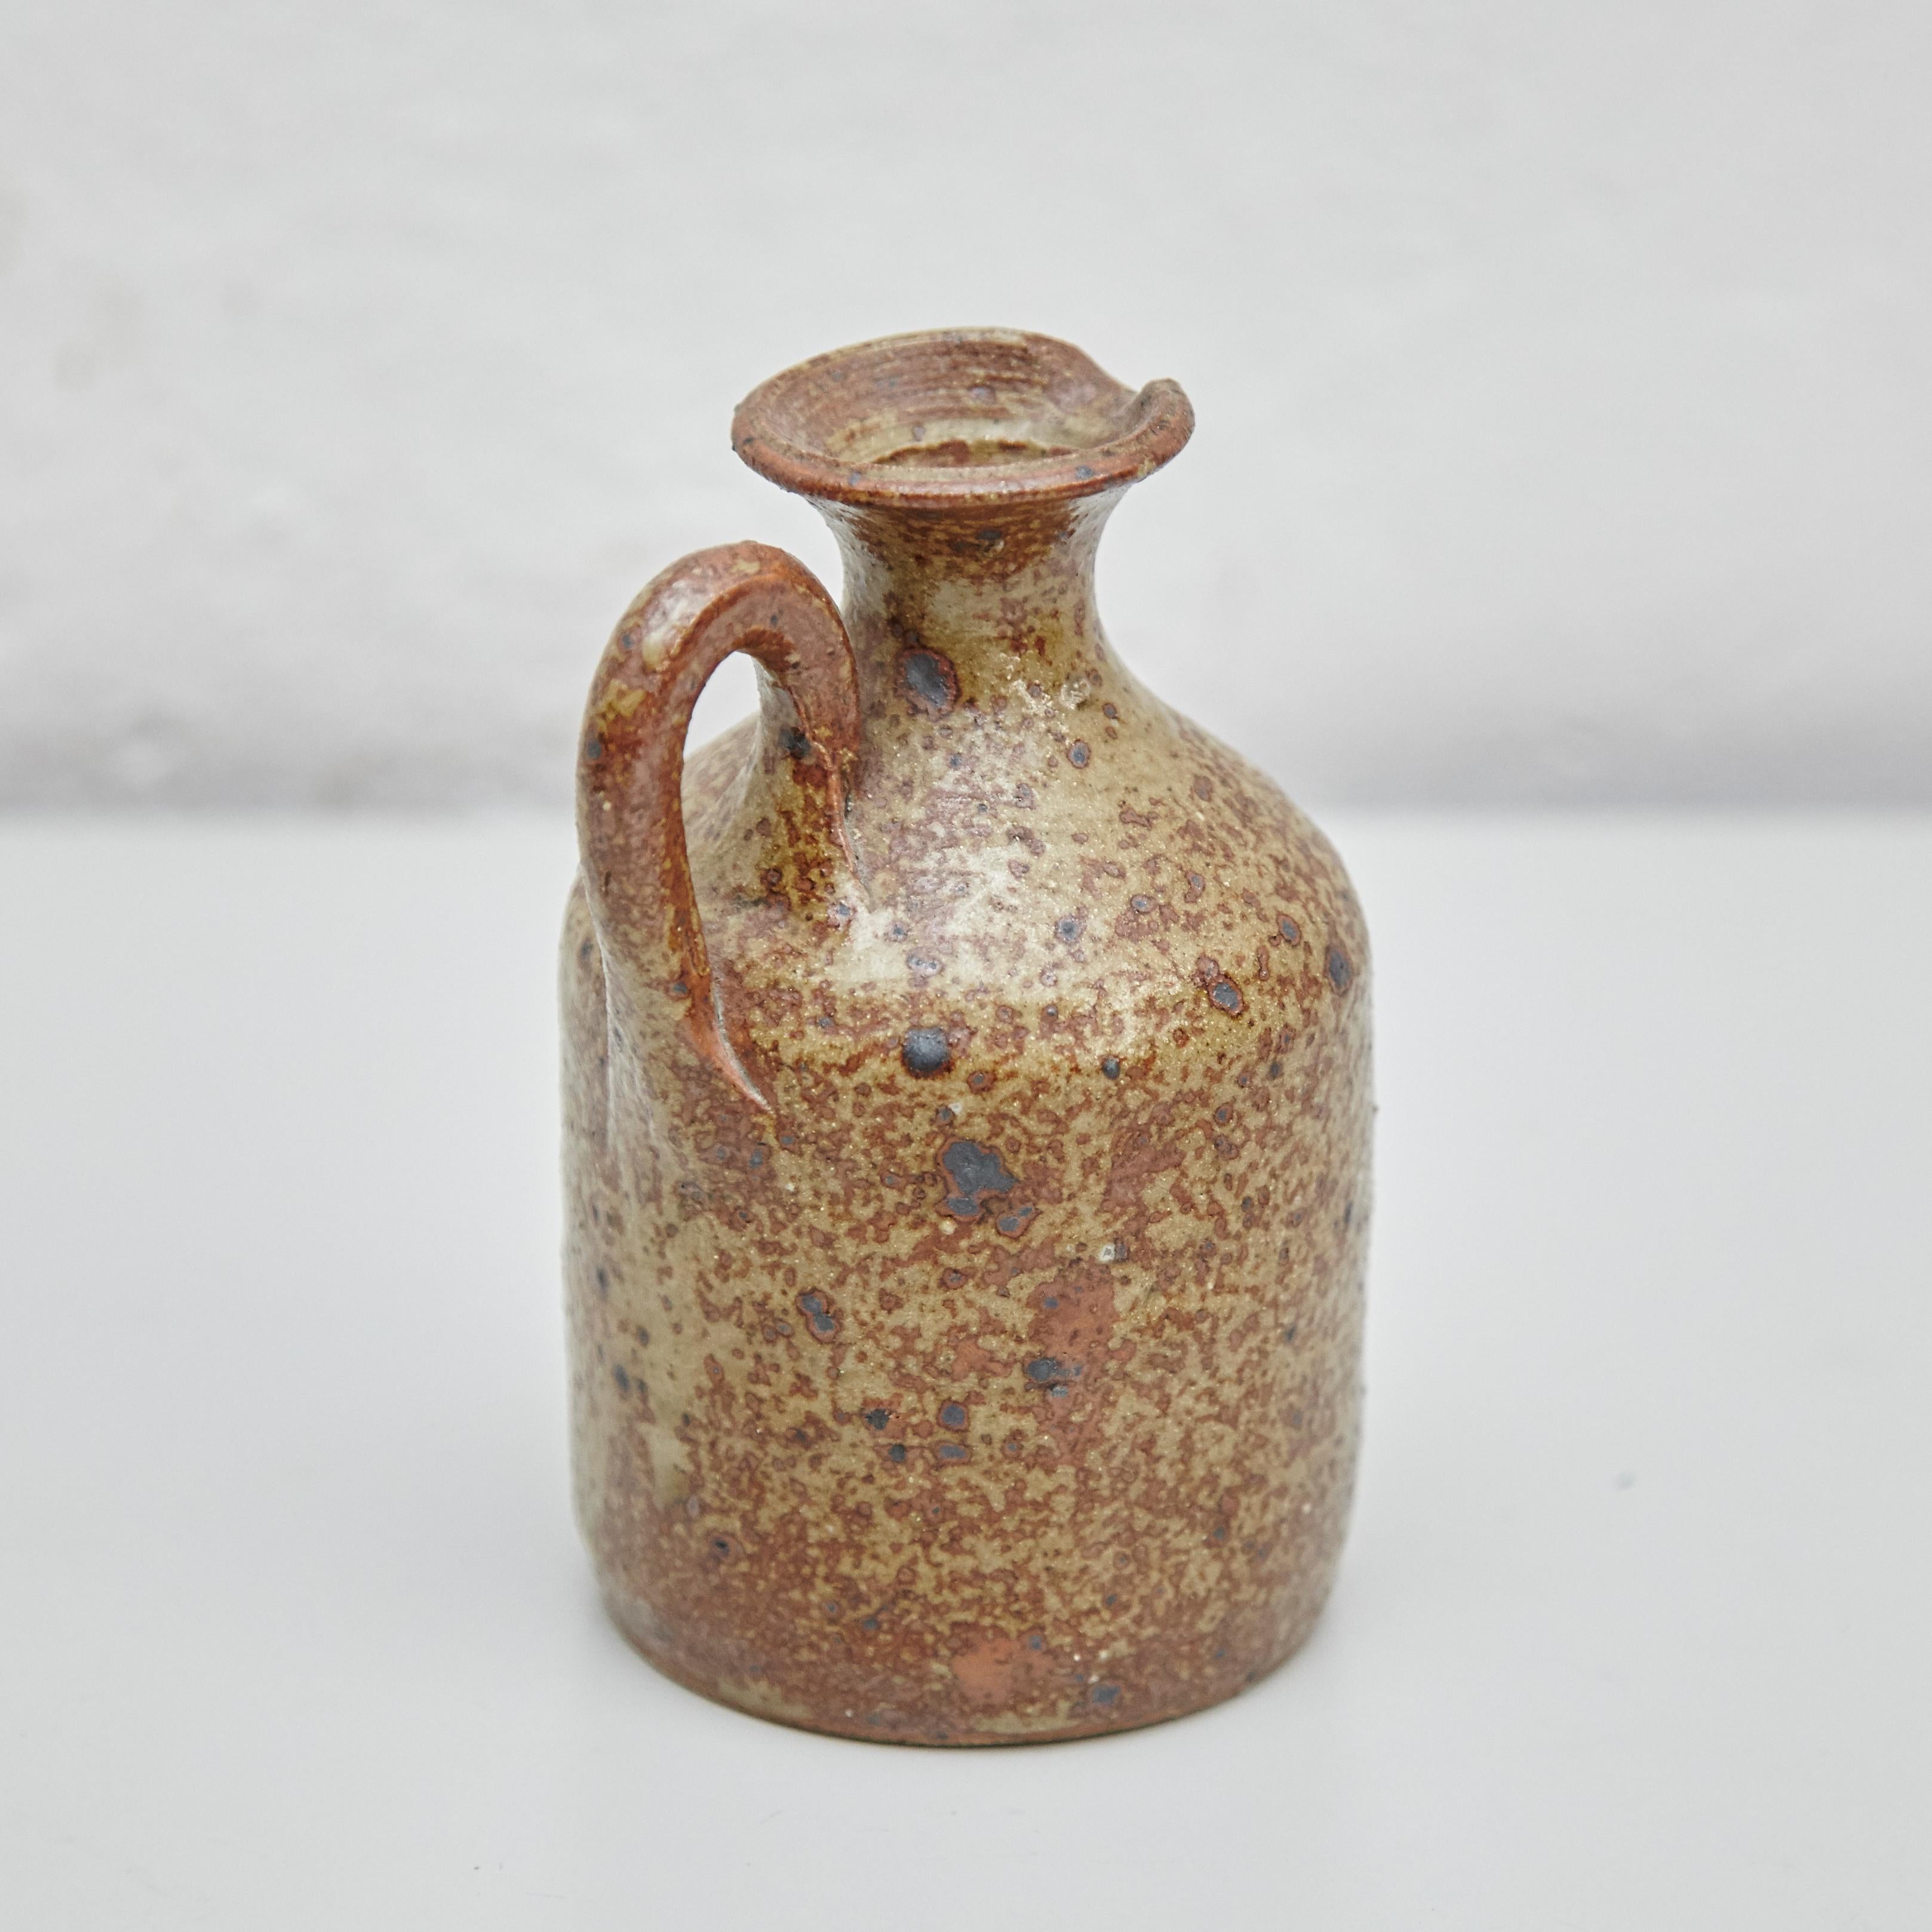 Traditional Rustic Spanish Ceramic 2